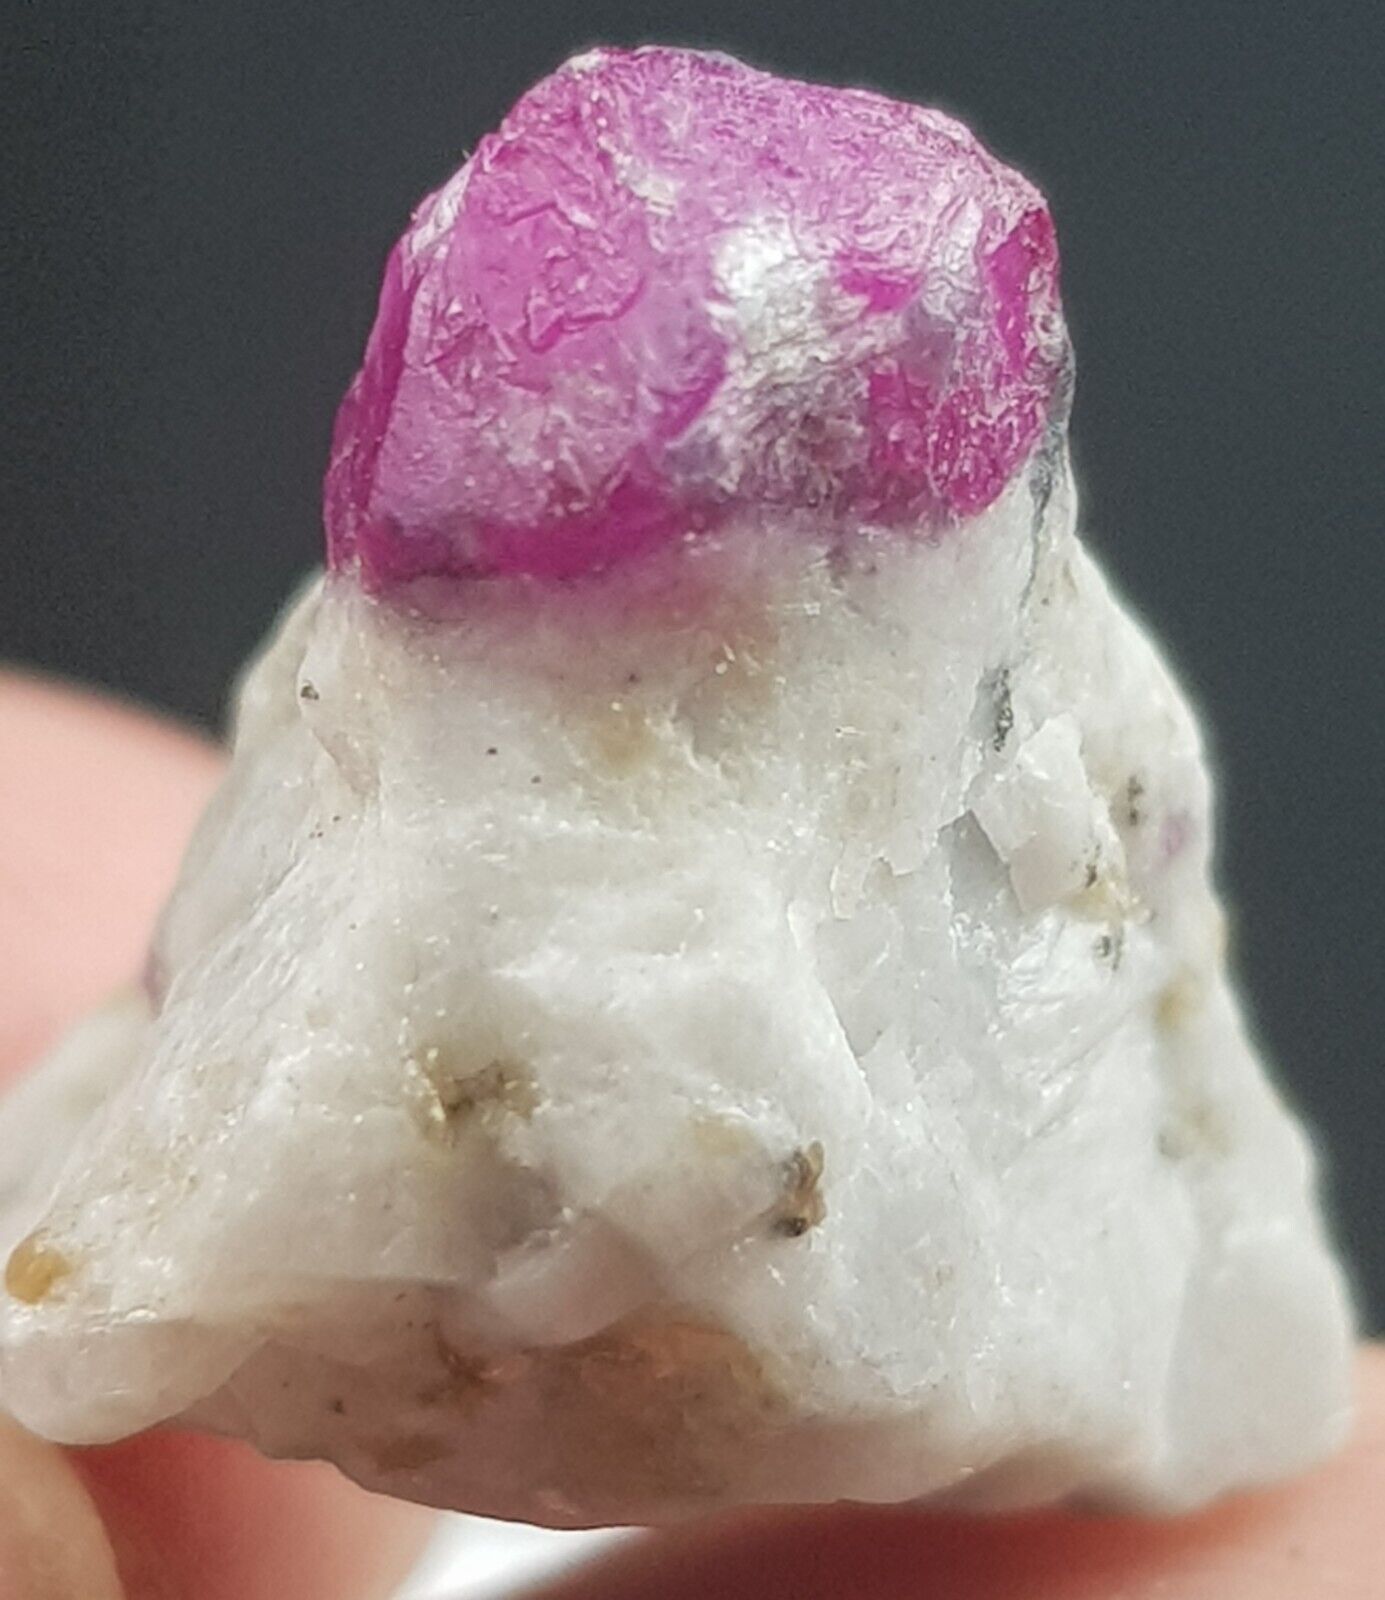 Fantastic 19 ct Natural Pink color Afghani Ruby crystal Specimen 